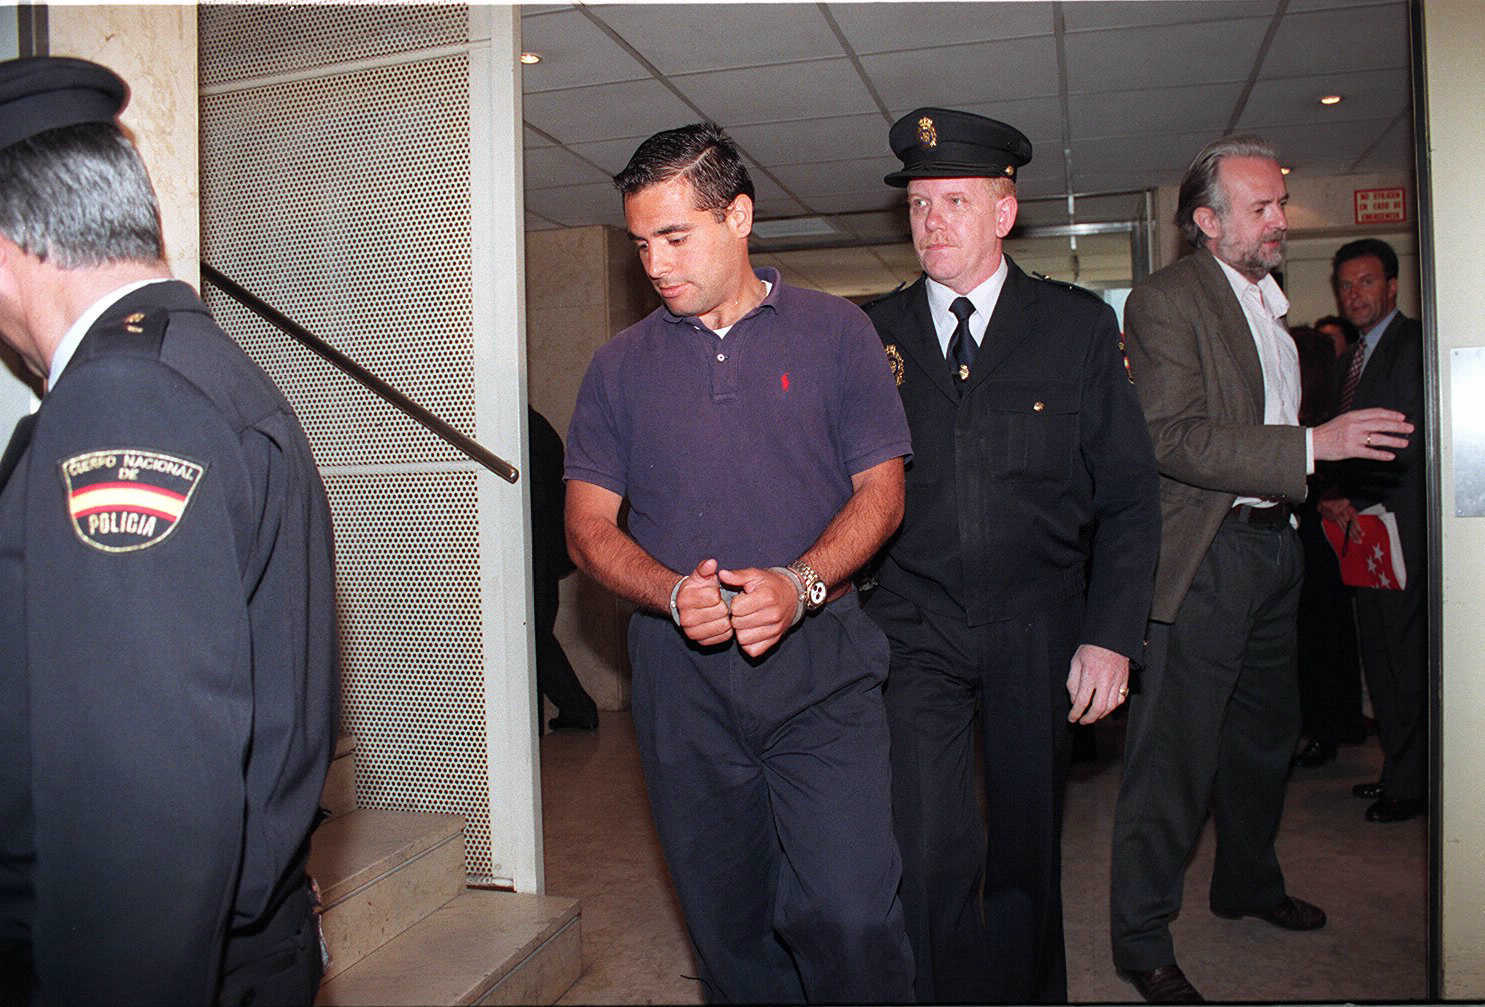 Cristbal C., El Mallorqun, en el juicio en 1997 por el asesinato del Polgono Urtinsa.